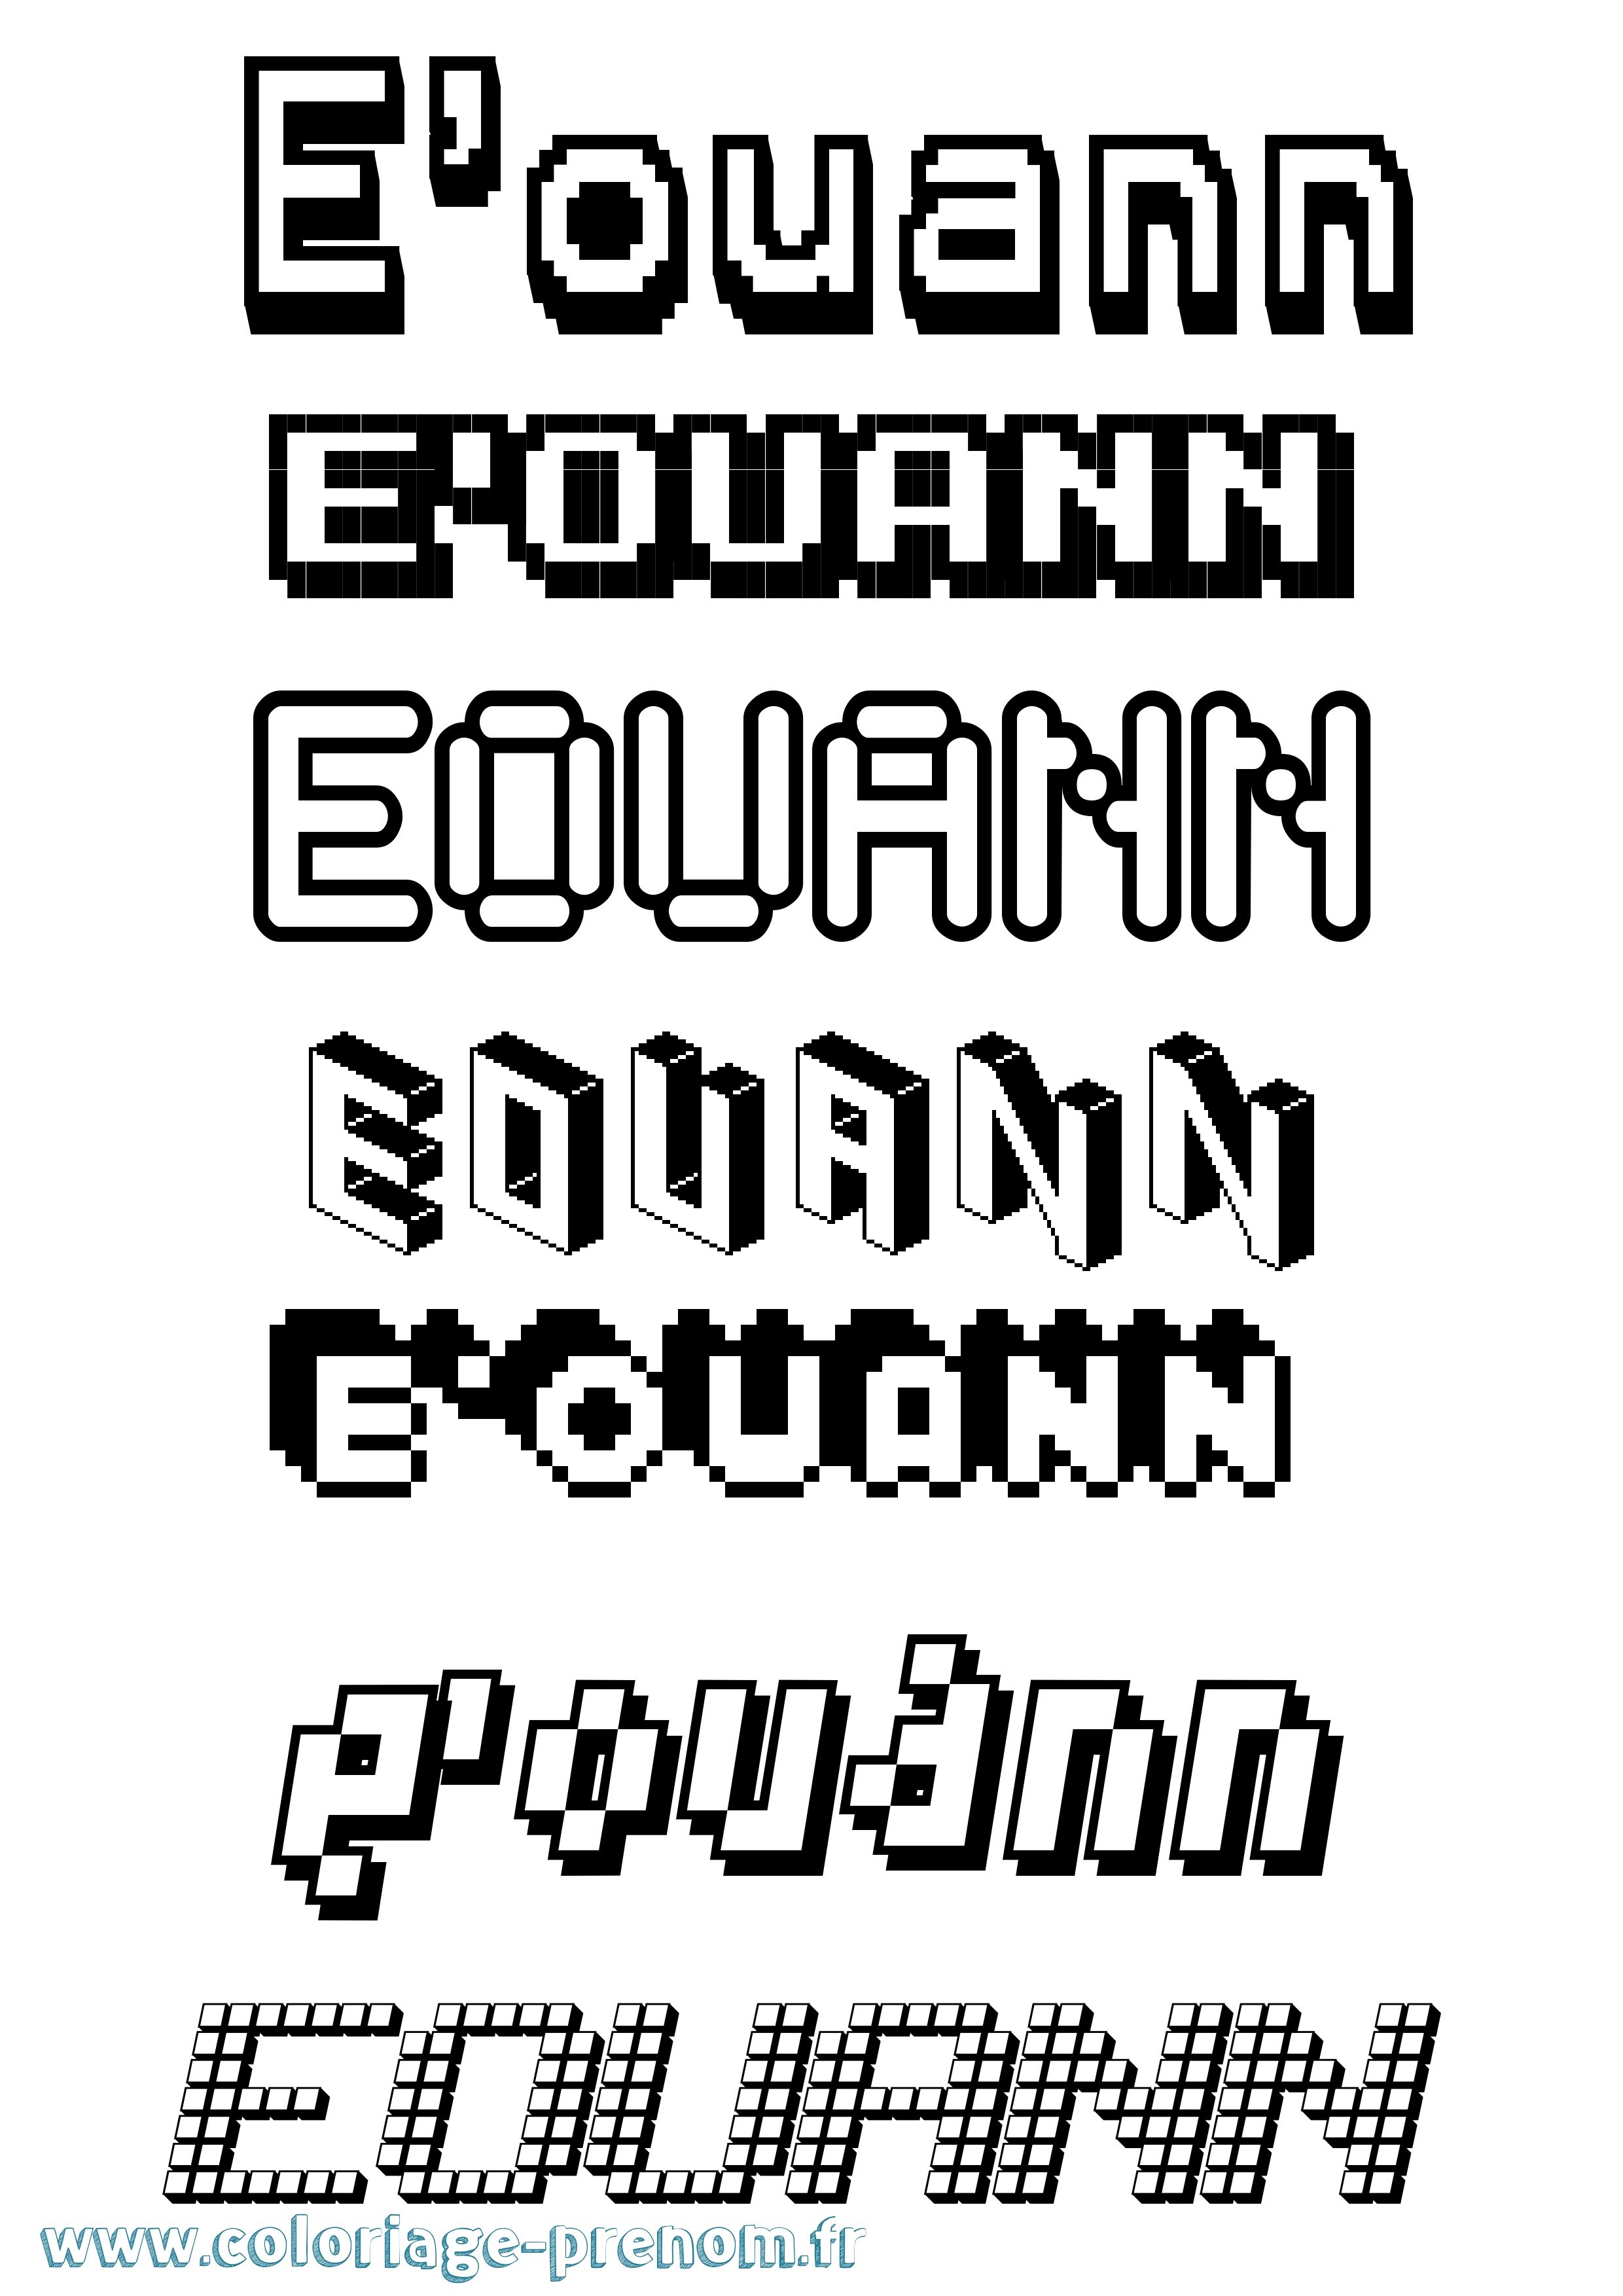 Coloriage prénom E'Ouann Pixel